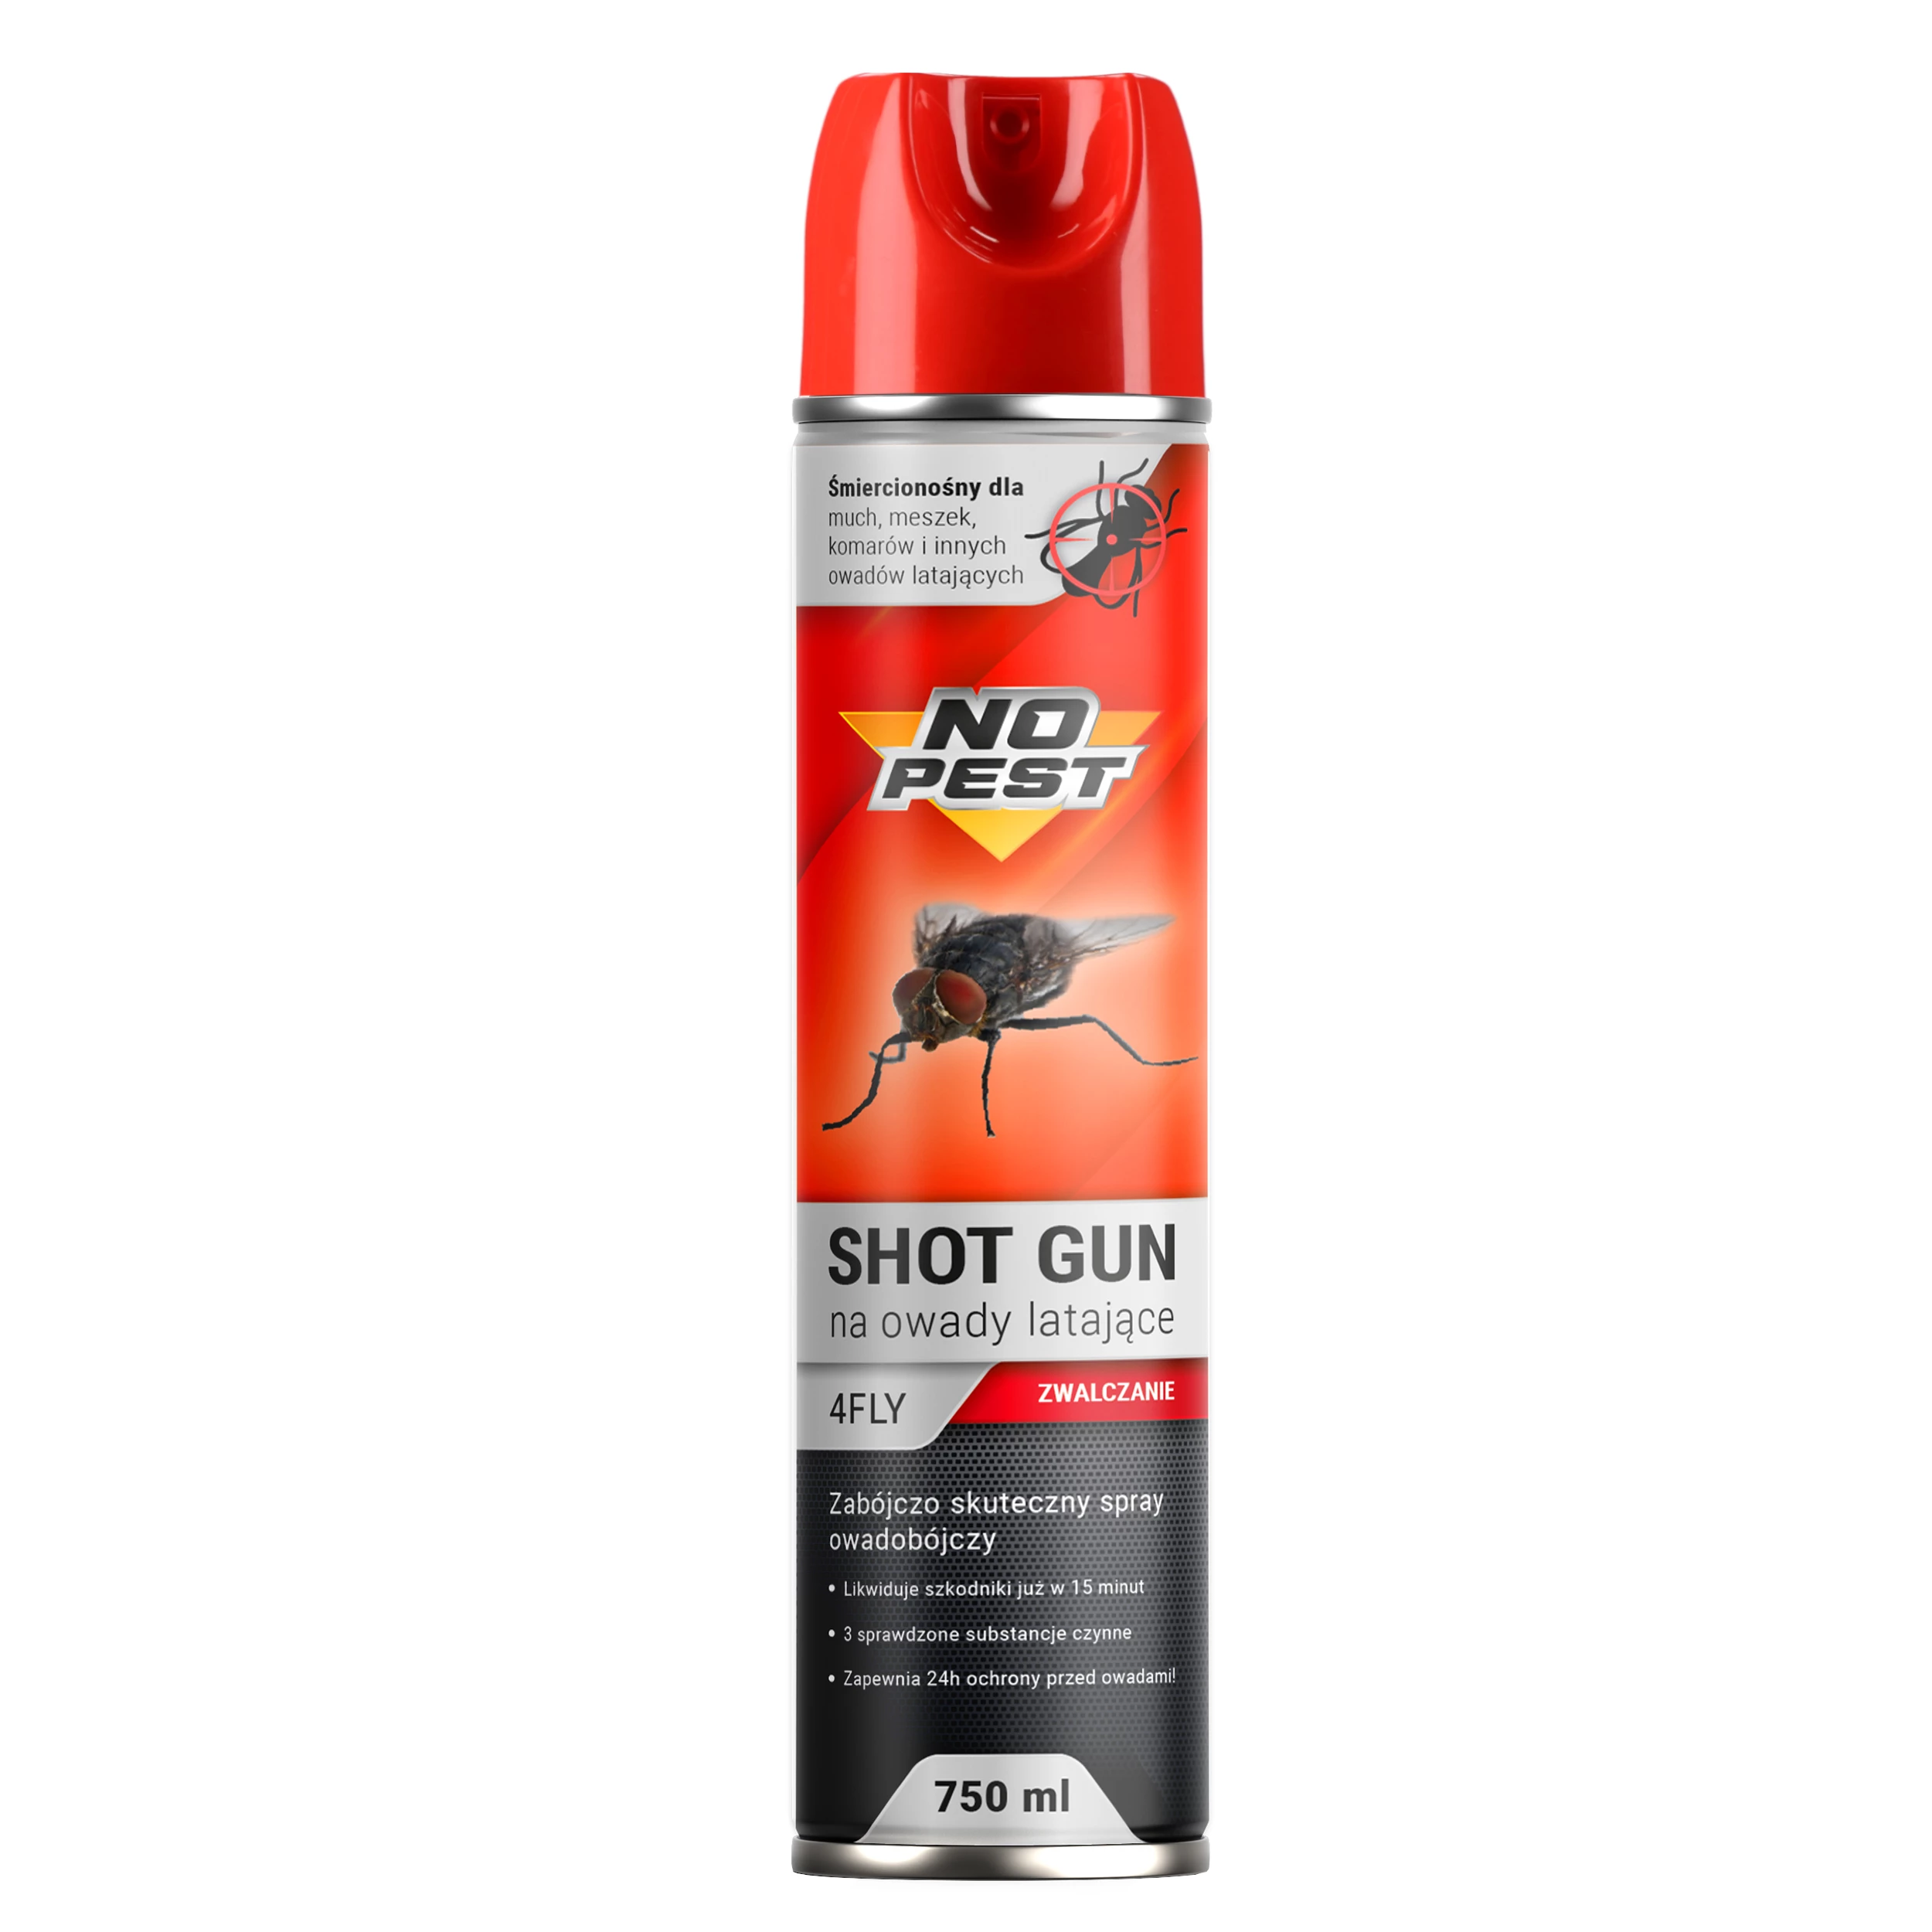 preparat na muchy, środek na muchy, muchozol, NO PEST na muchy, spray na muchy, na komary w pomieszczeniu, środek na ćmianki